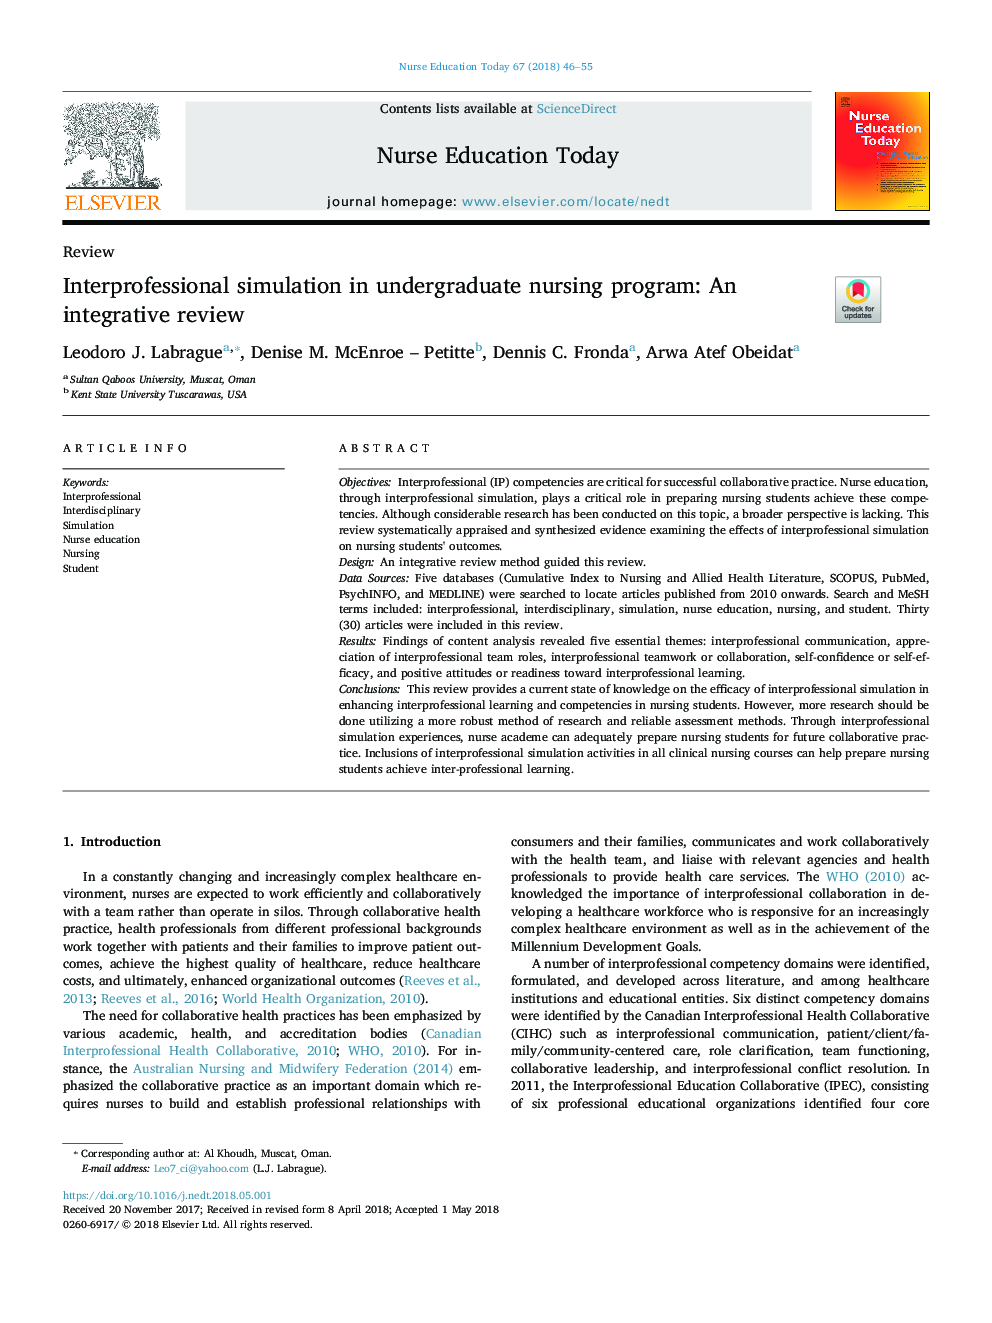 شبیه سازی بین حرفه ای در برنامه پرستاری دوره کارشناسی: یک بررسی جامع 